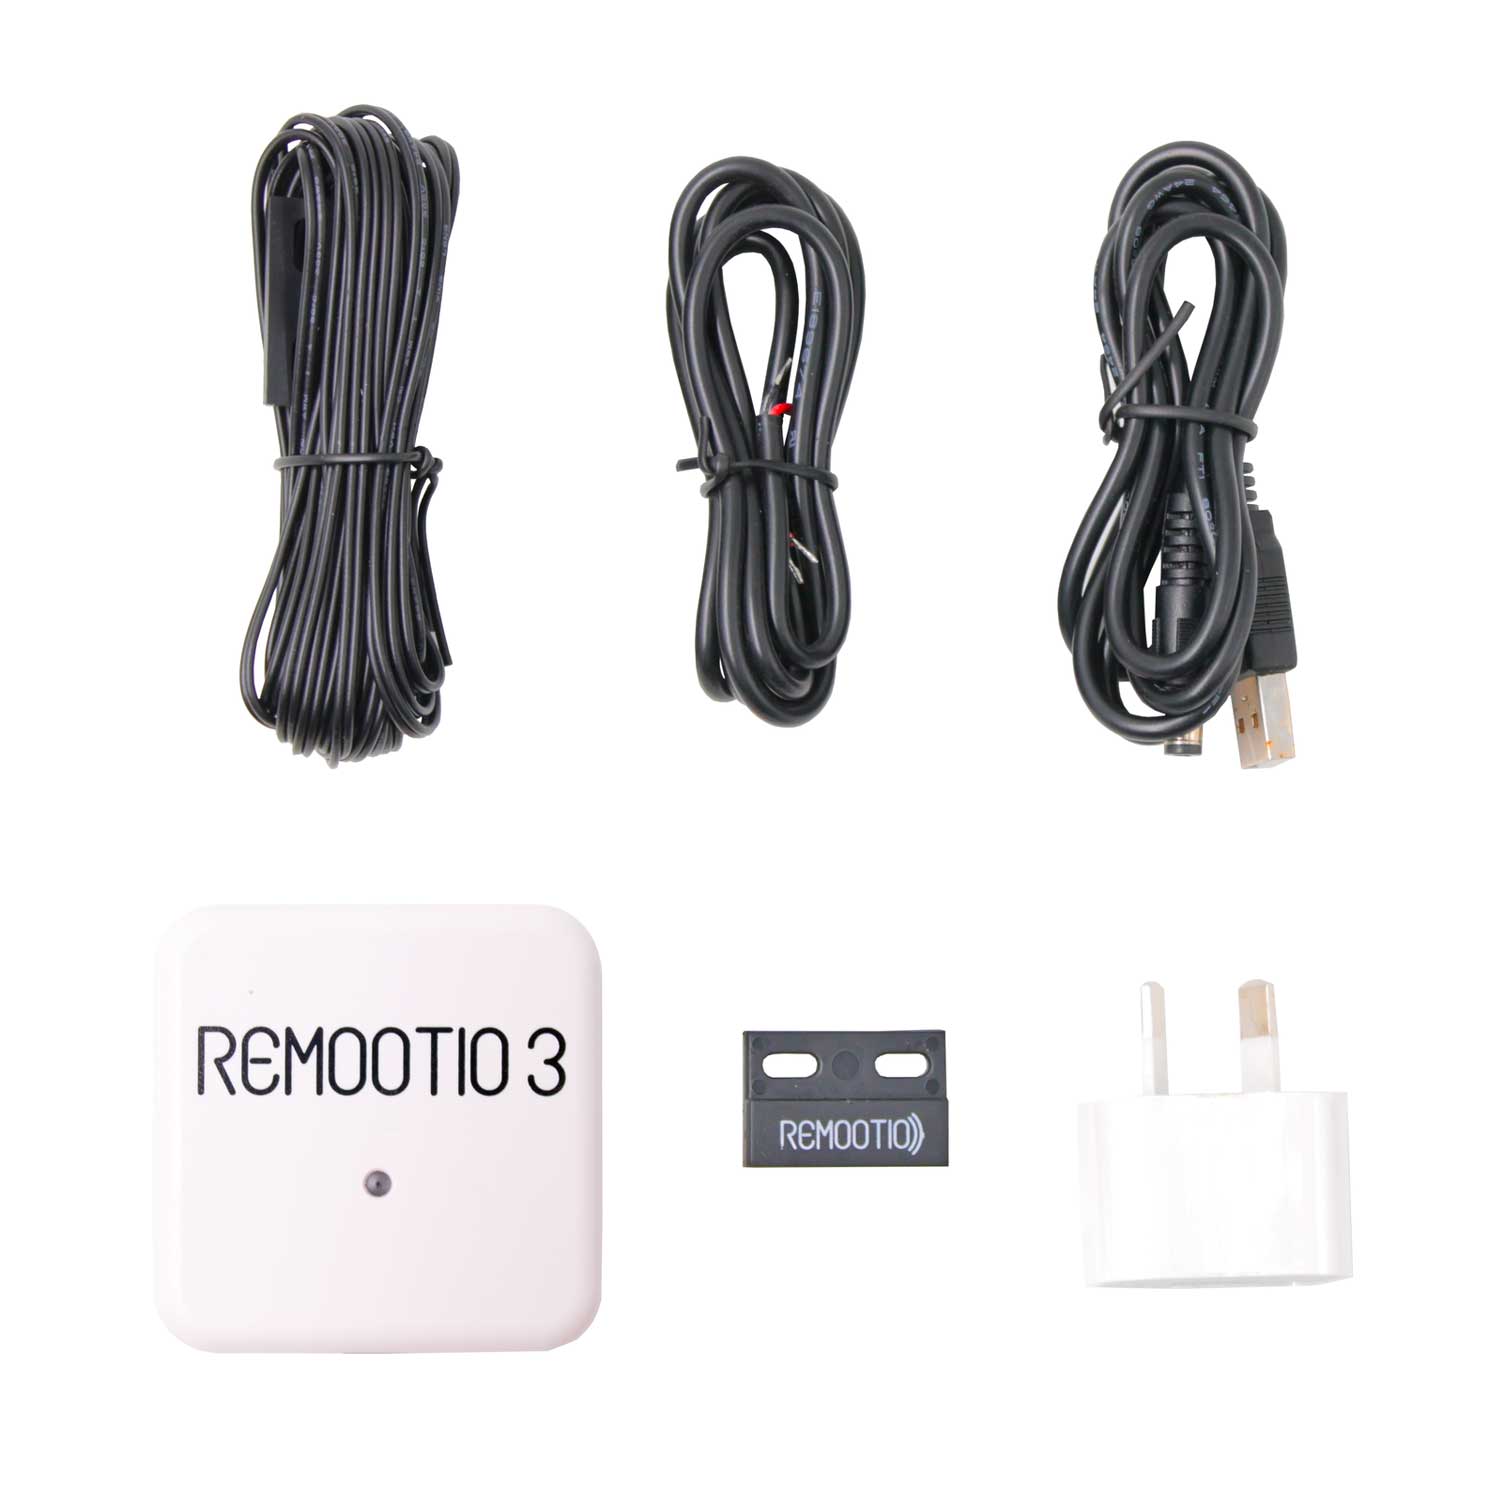 Remootio 3 WiFi and Bluetooth Smart Auto Garage Door Opener